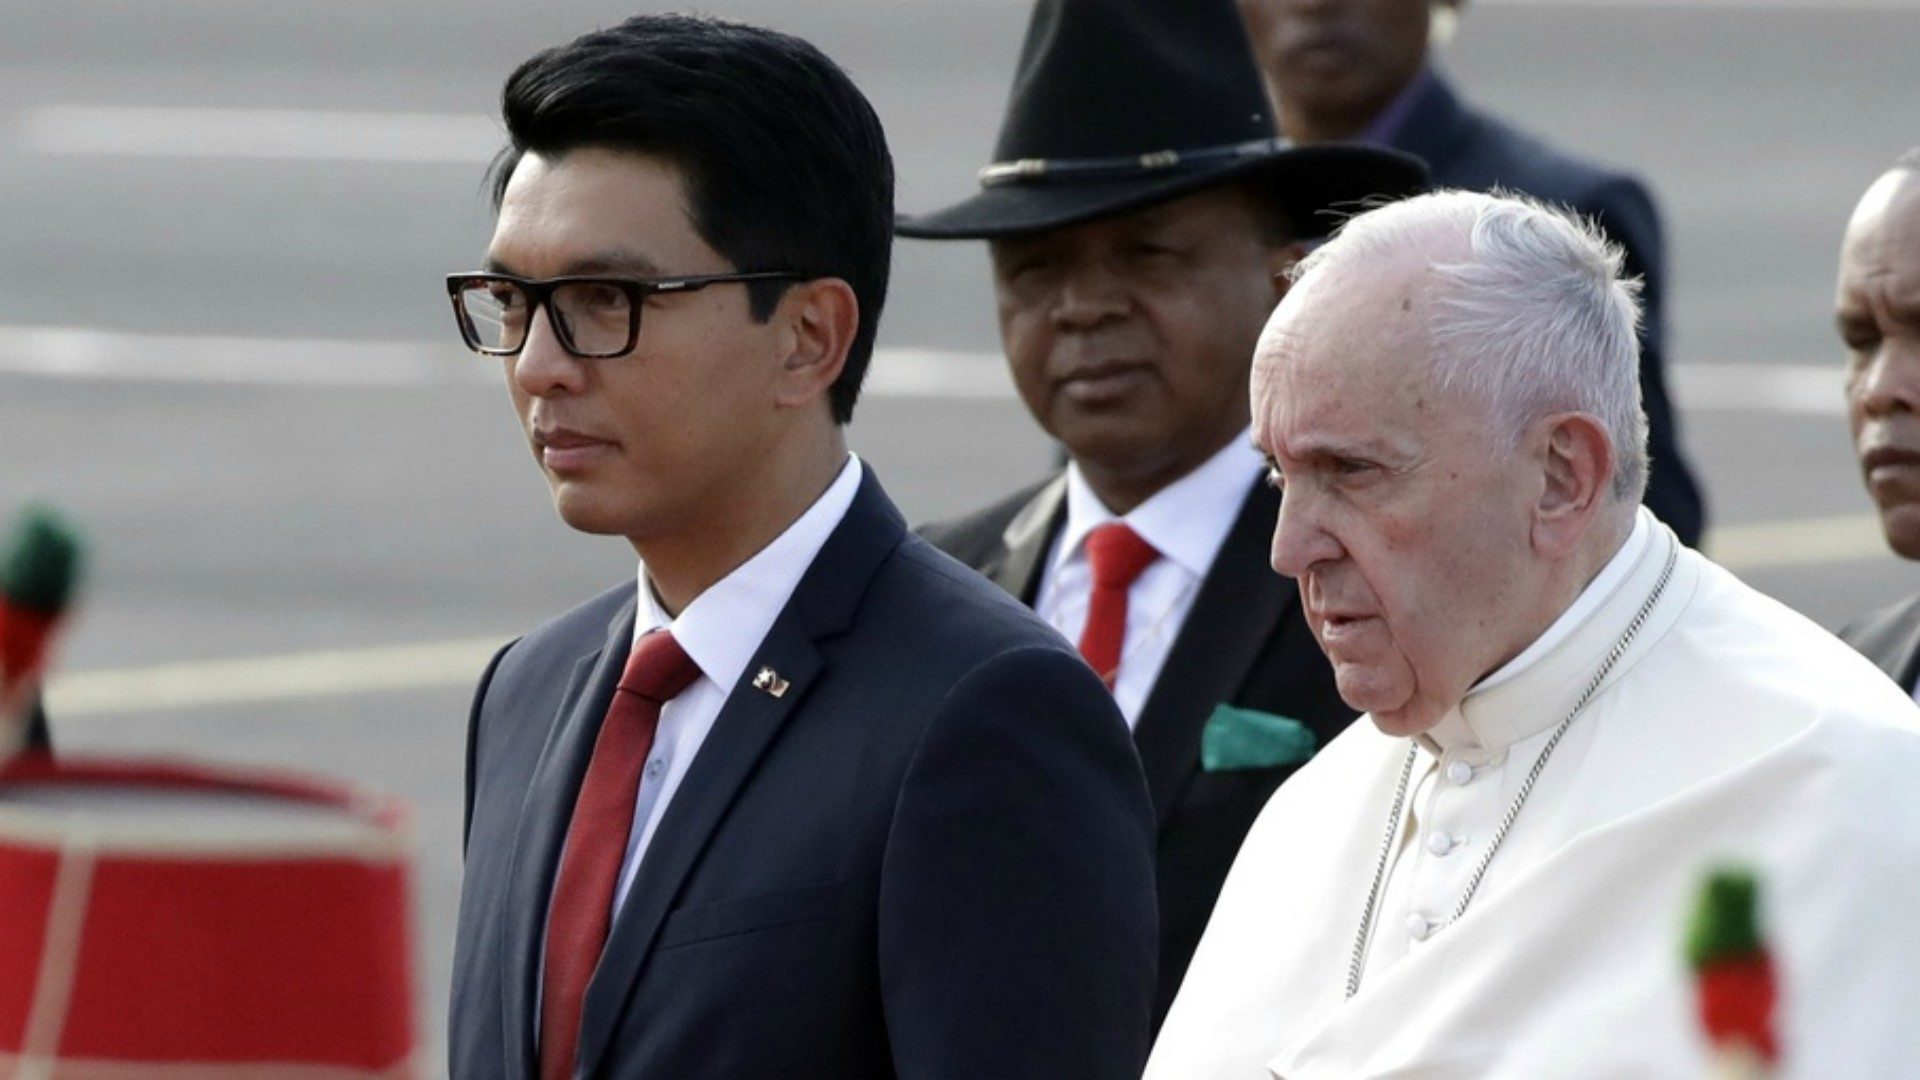 Le pape François a été accueilli à l'aéroport de Tananarive par le président Andry Rajoelina | © Keystone